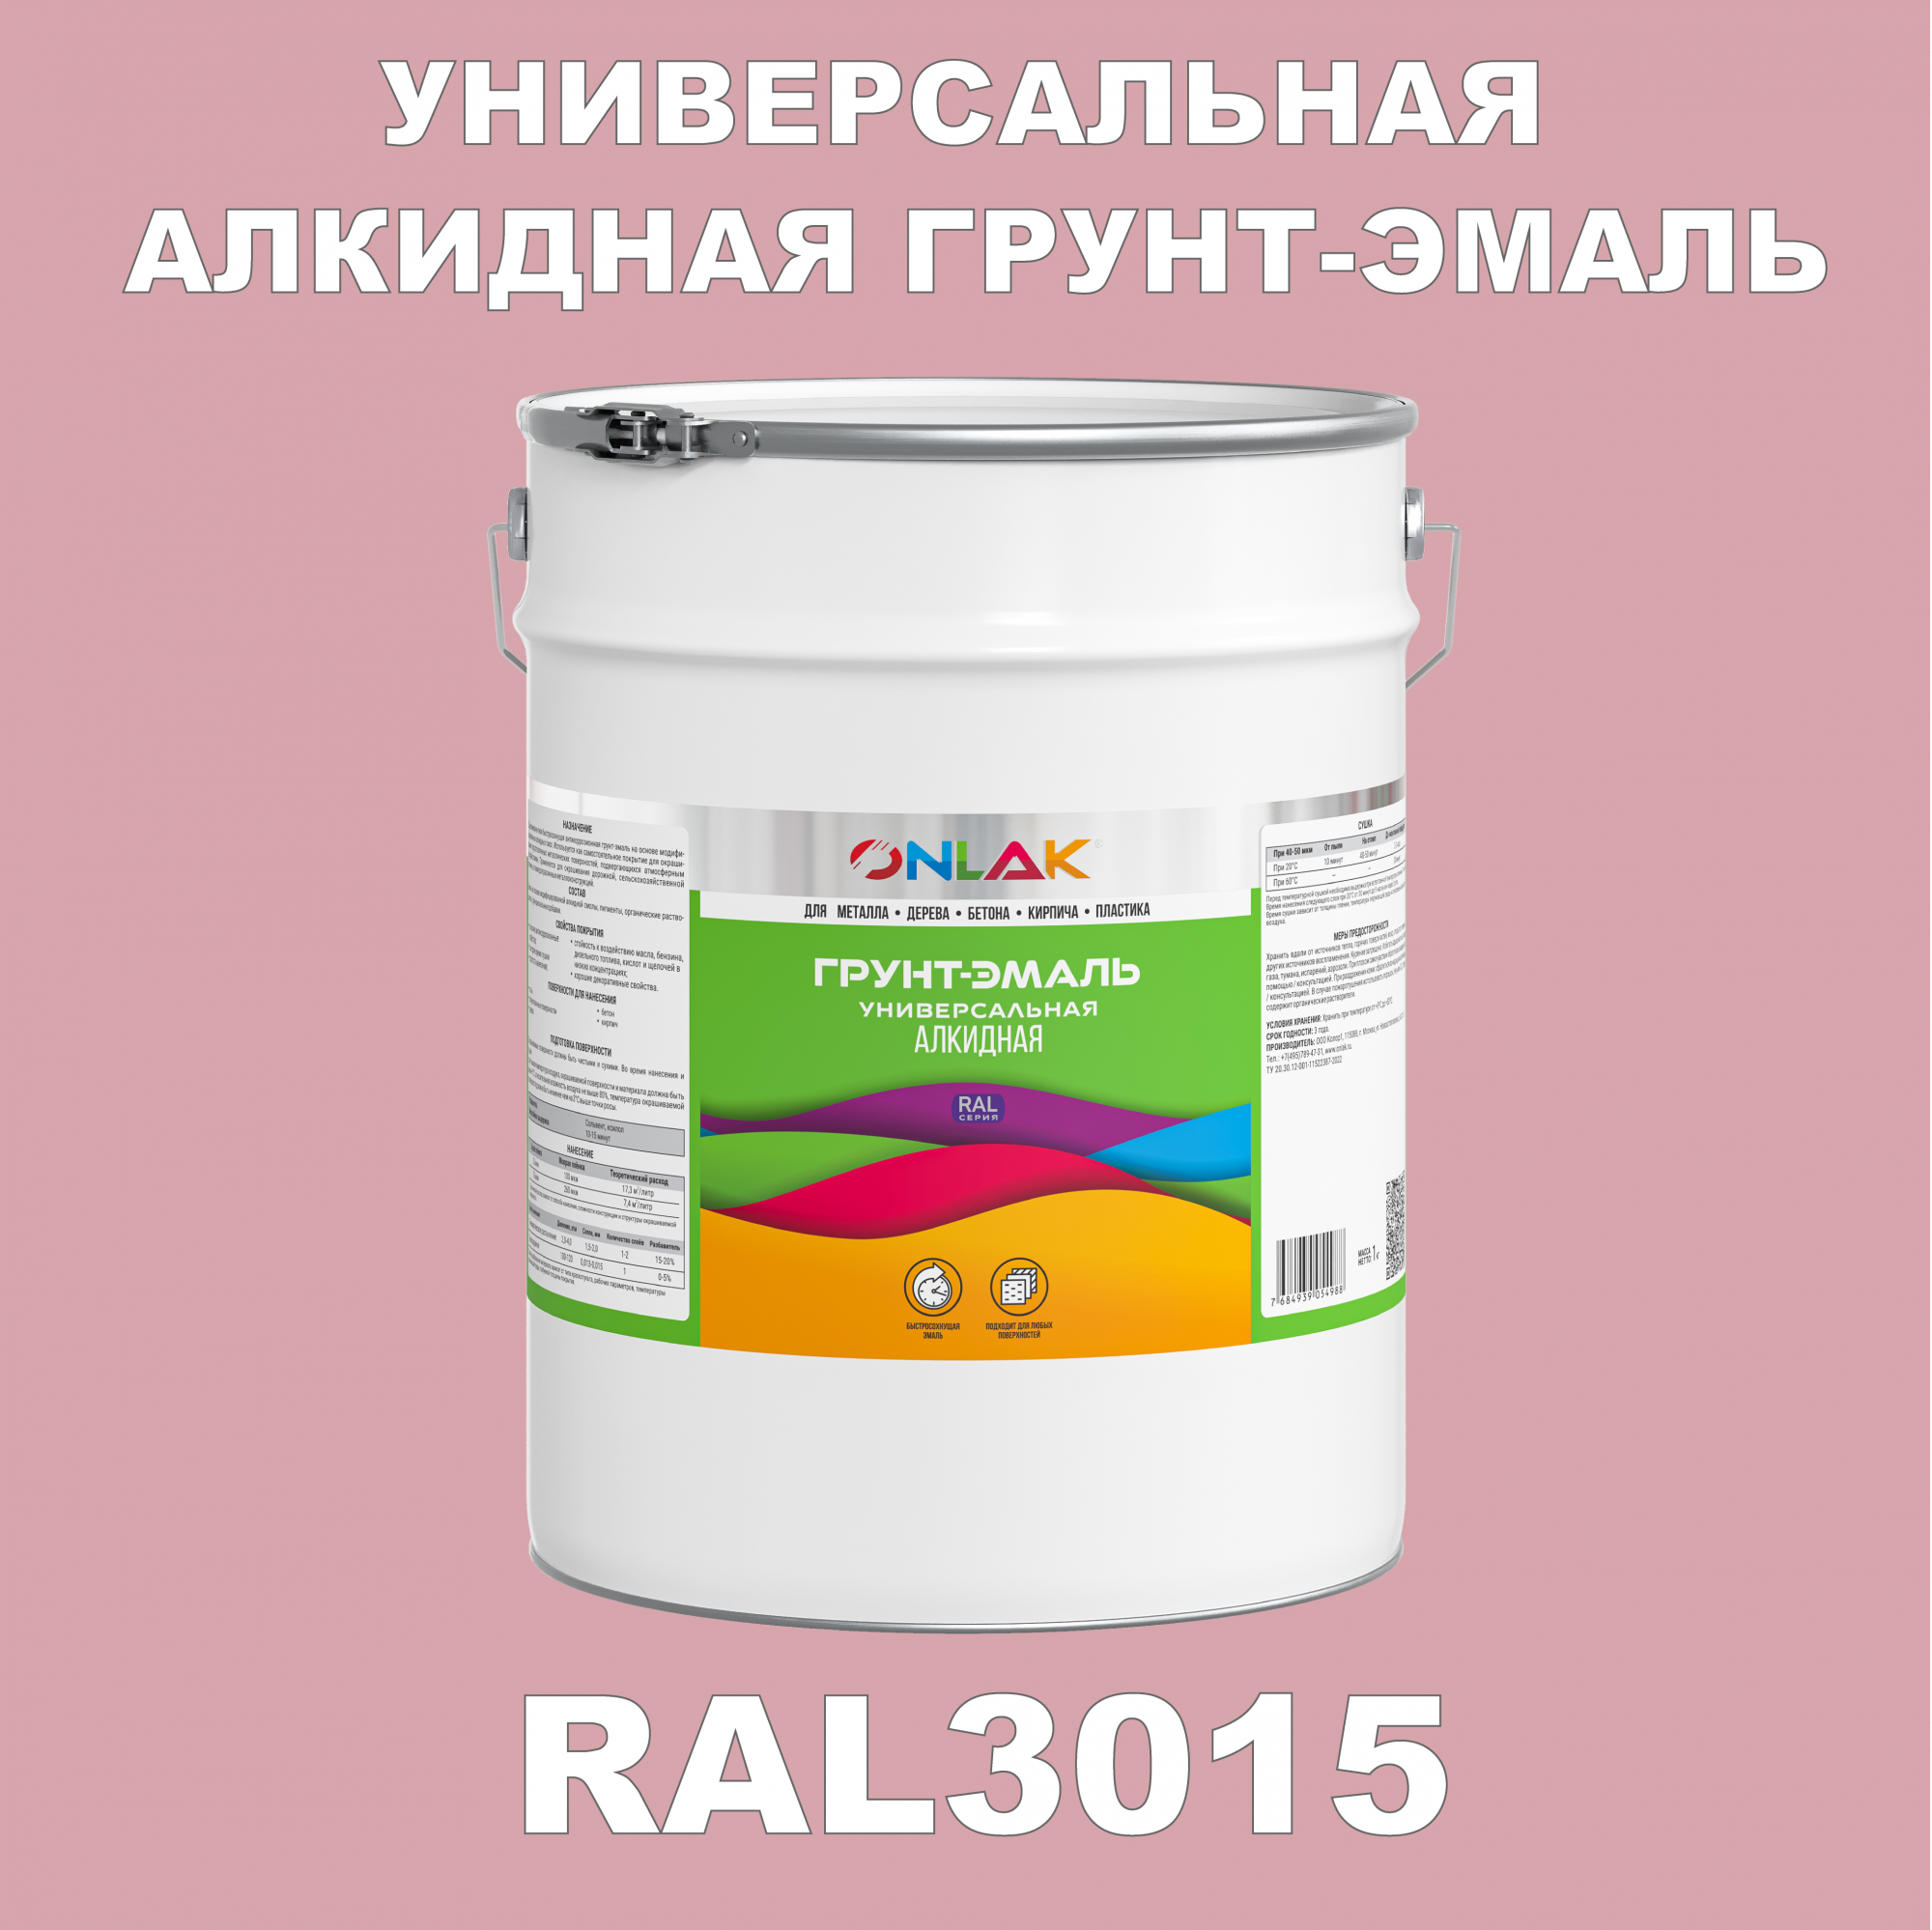 Грунт-эмаль ONLAK 1К RAL3015 антикоррозионная алкидная по металлу по ржавчине 20 кг грунт эмаль аэрозольная престиж 3в1 алкидная коричневая ral 8017 425 мл 0 425 кг